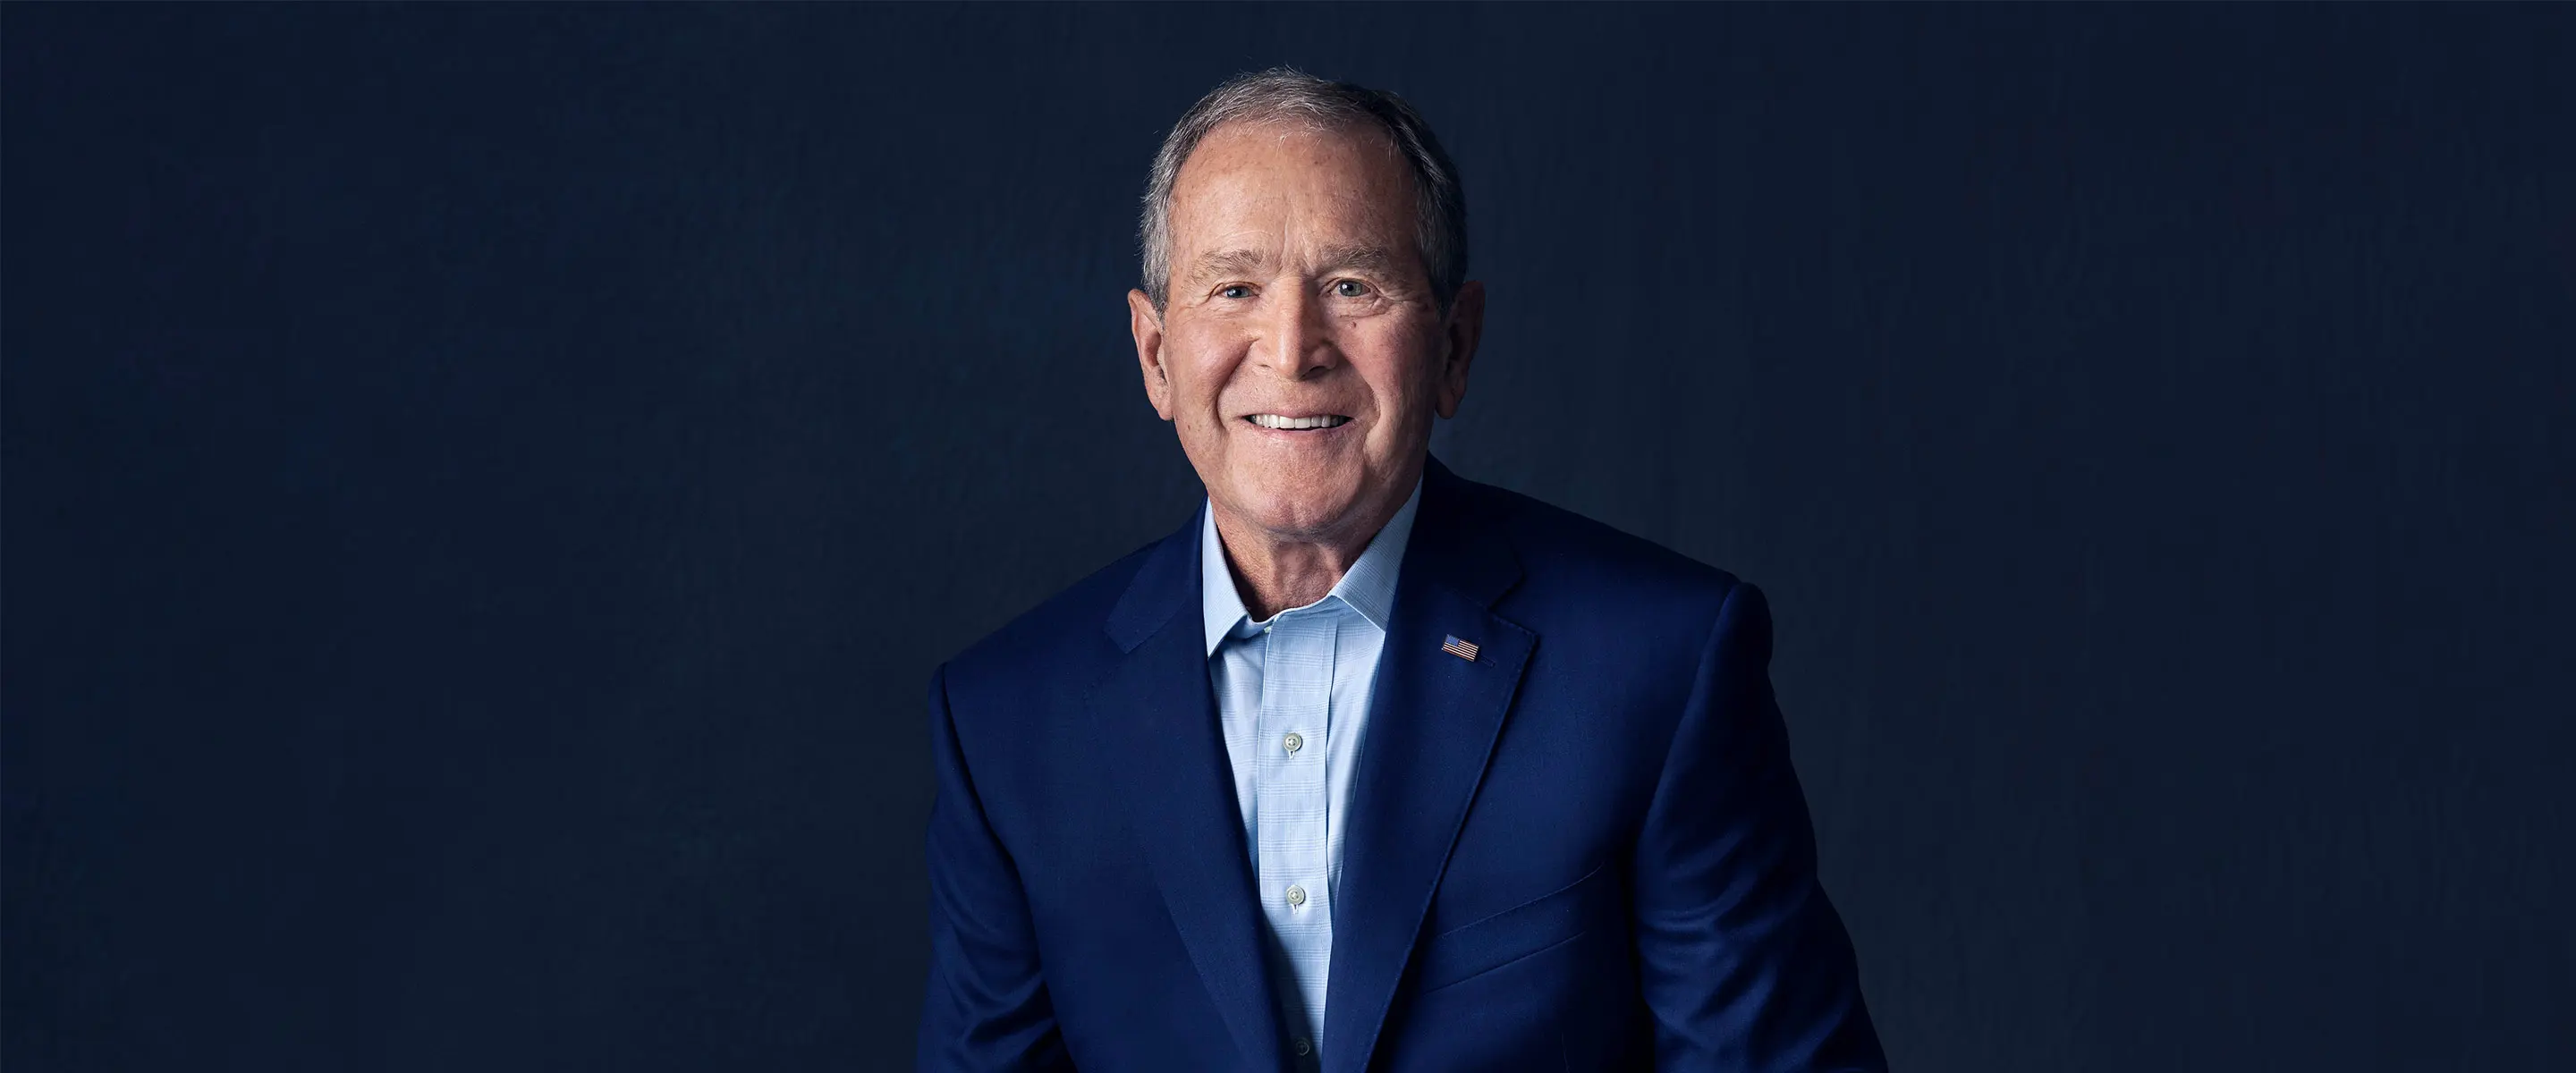 پرزیدنت جورج دبلیو بوش رهبری اصیل را آموزش می دهد